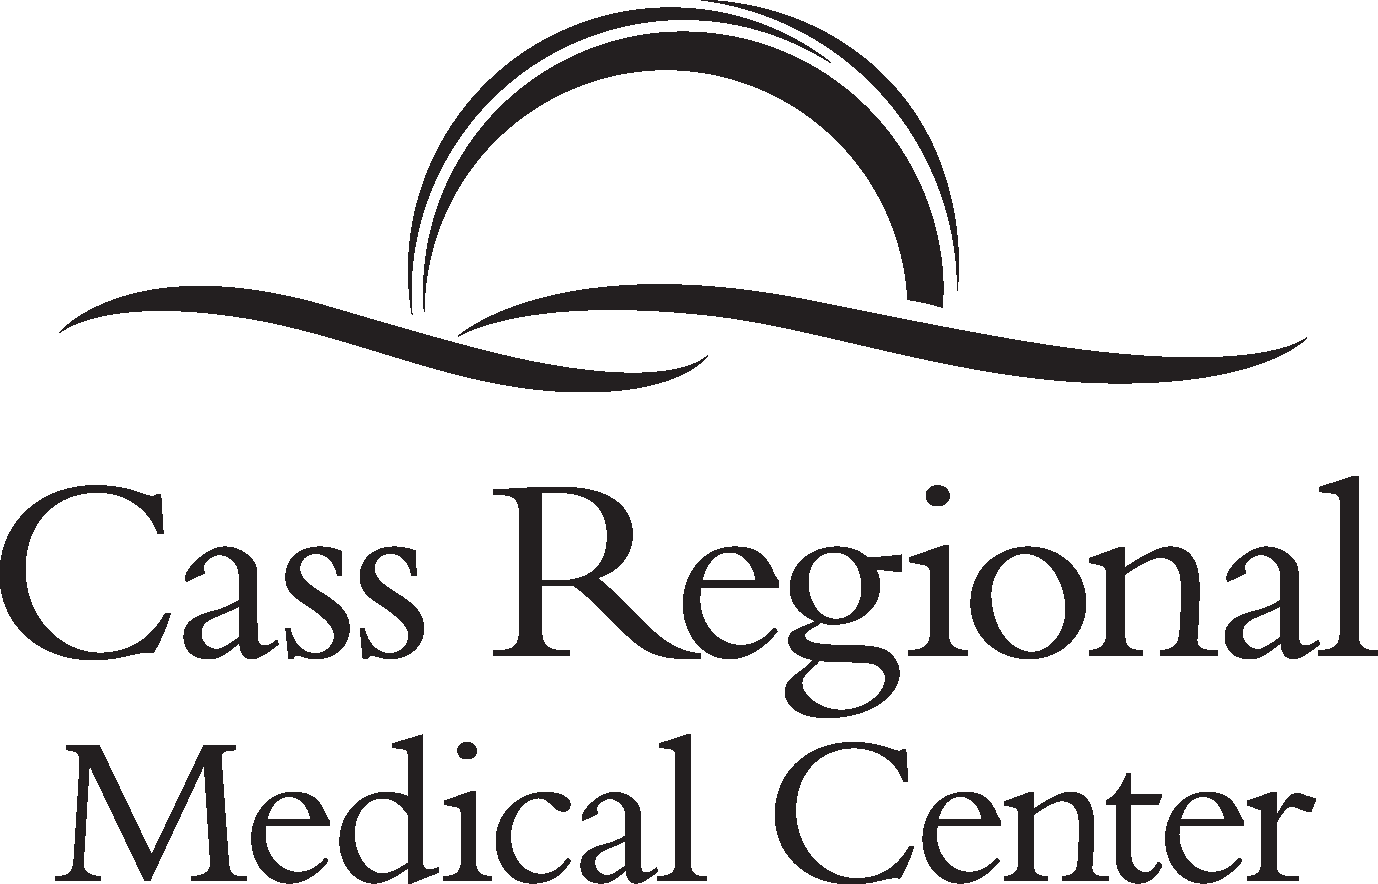 Cass Regional Medical Center